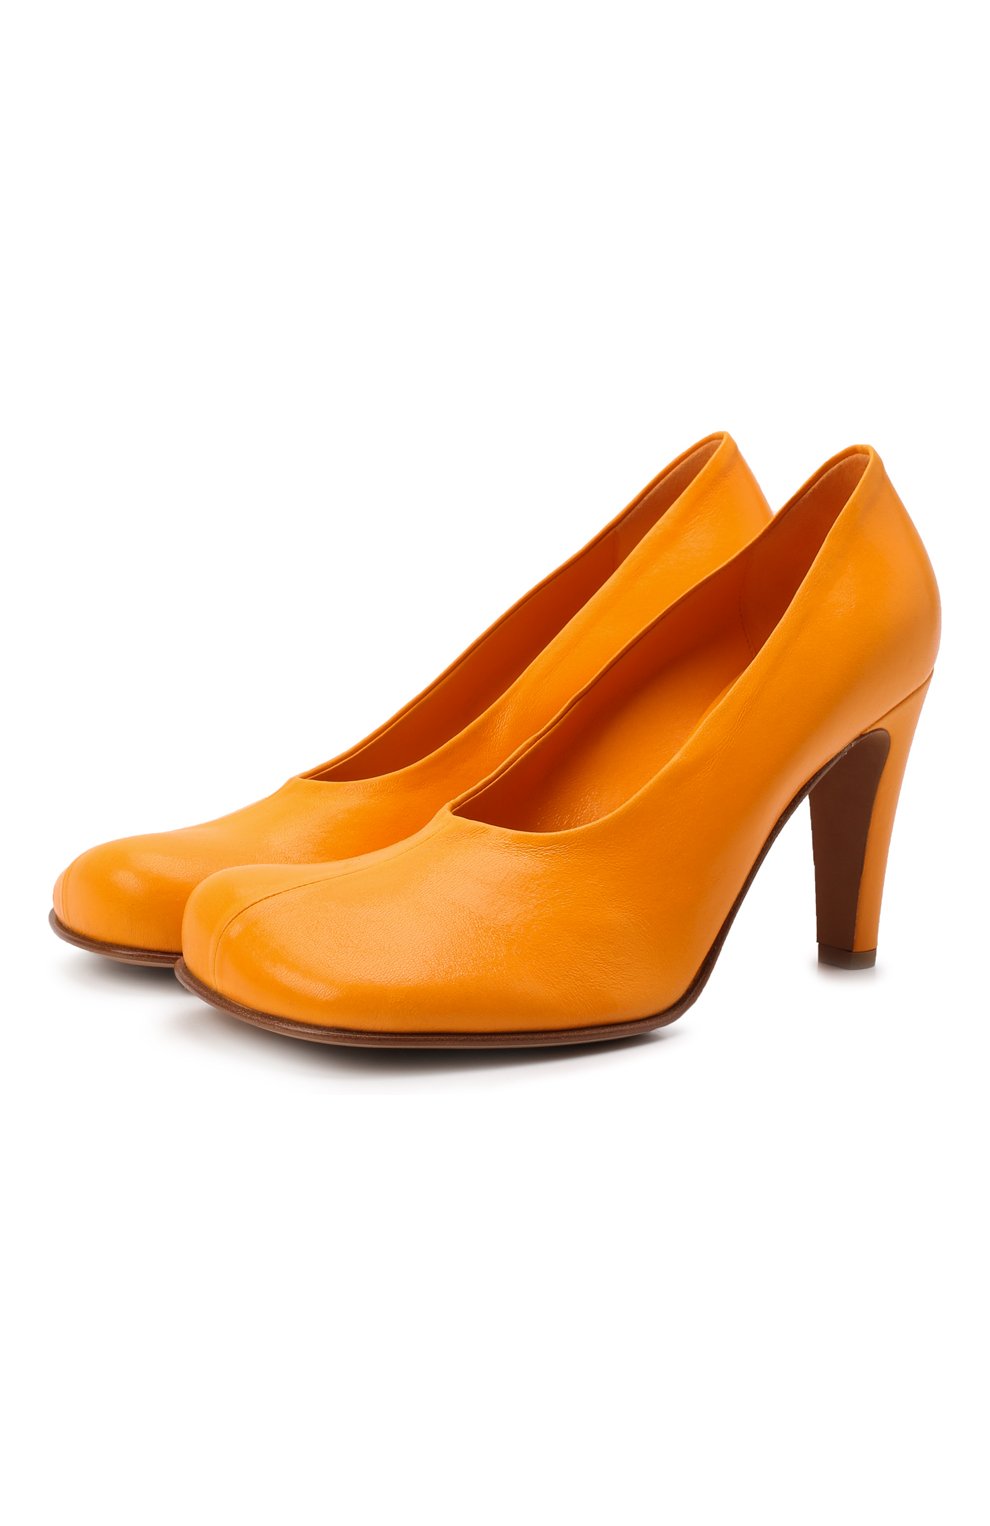 Женские кожаные туфли the block BOTTEGA VENETA оранжевого цвета, арт. 690050/VBS00 | Фото 1 (Каблук высота: Высокий; Материал внешний: Кожа; Материал внутренний: Натуральная кожа; Каблук тип: Устойчивый; Подошва: Плоская)